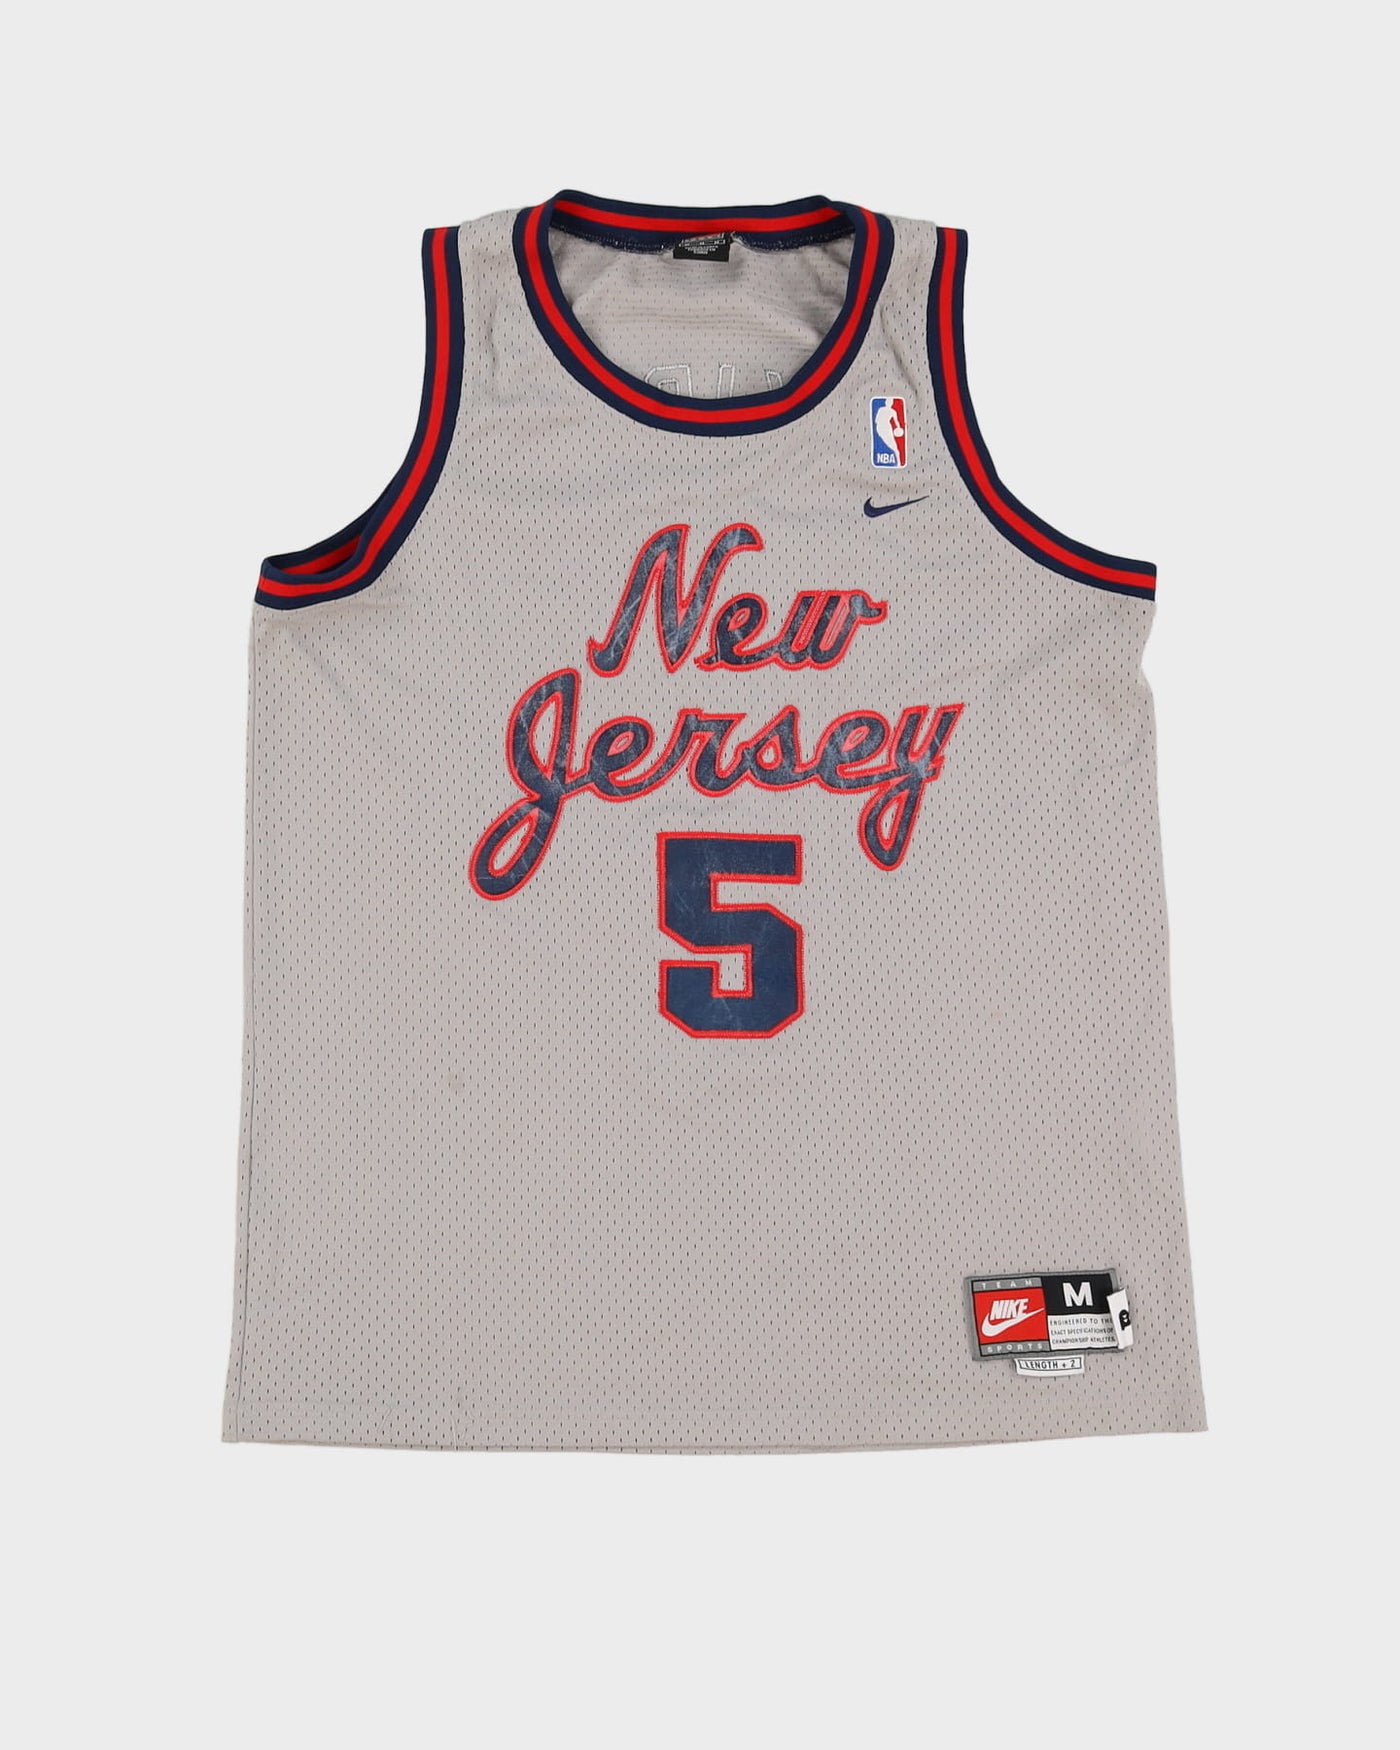 Nba New Jersey Nets Basketball Jersey #5 Kidd